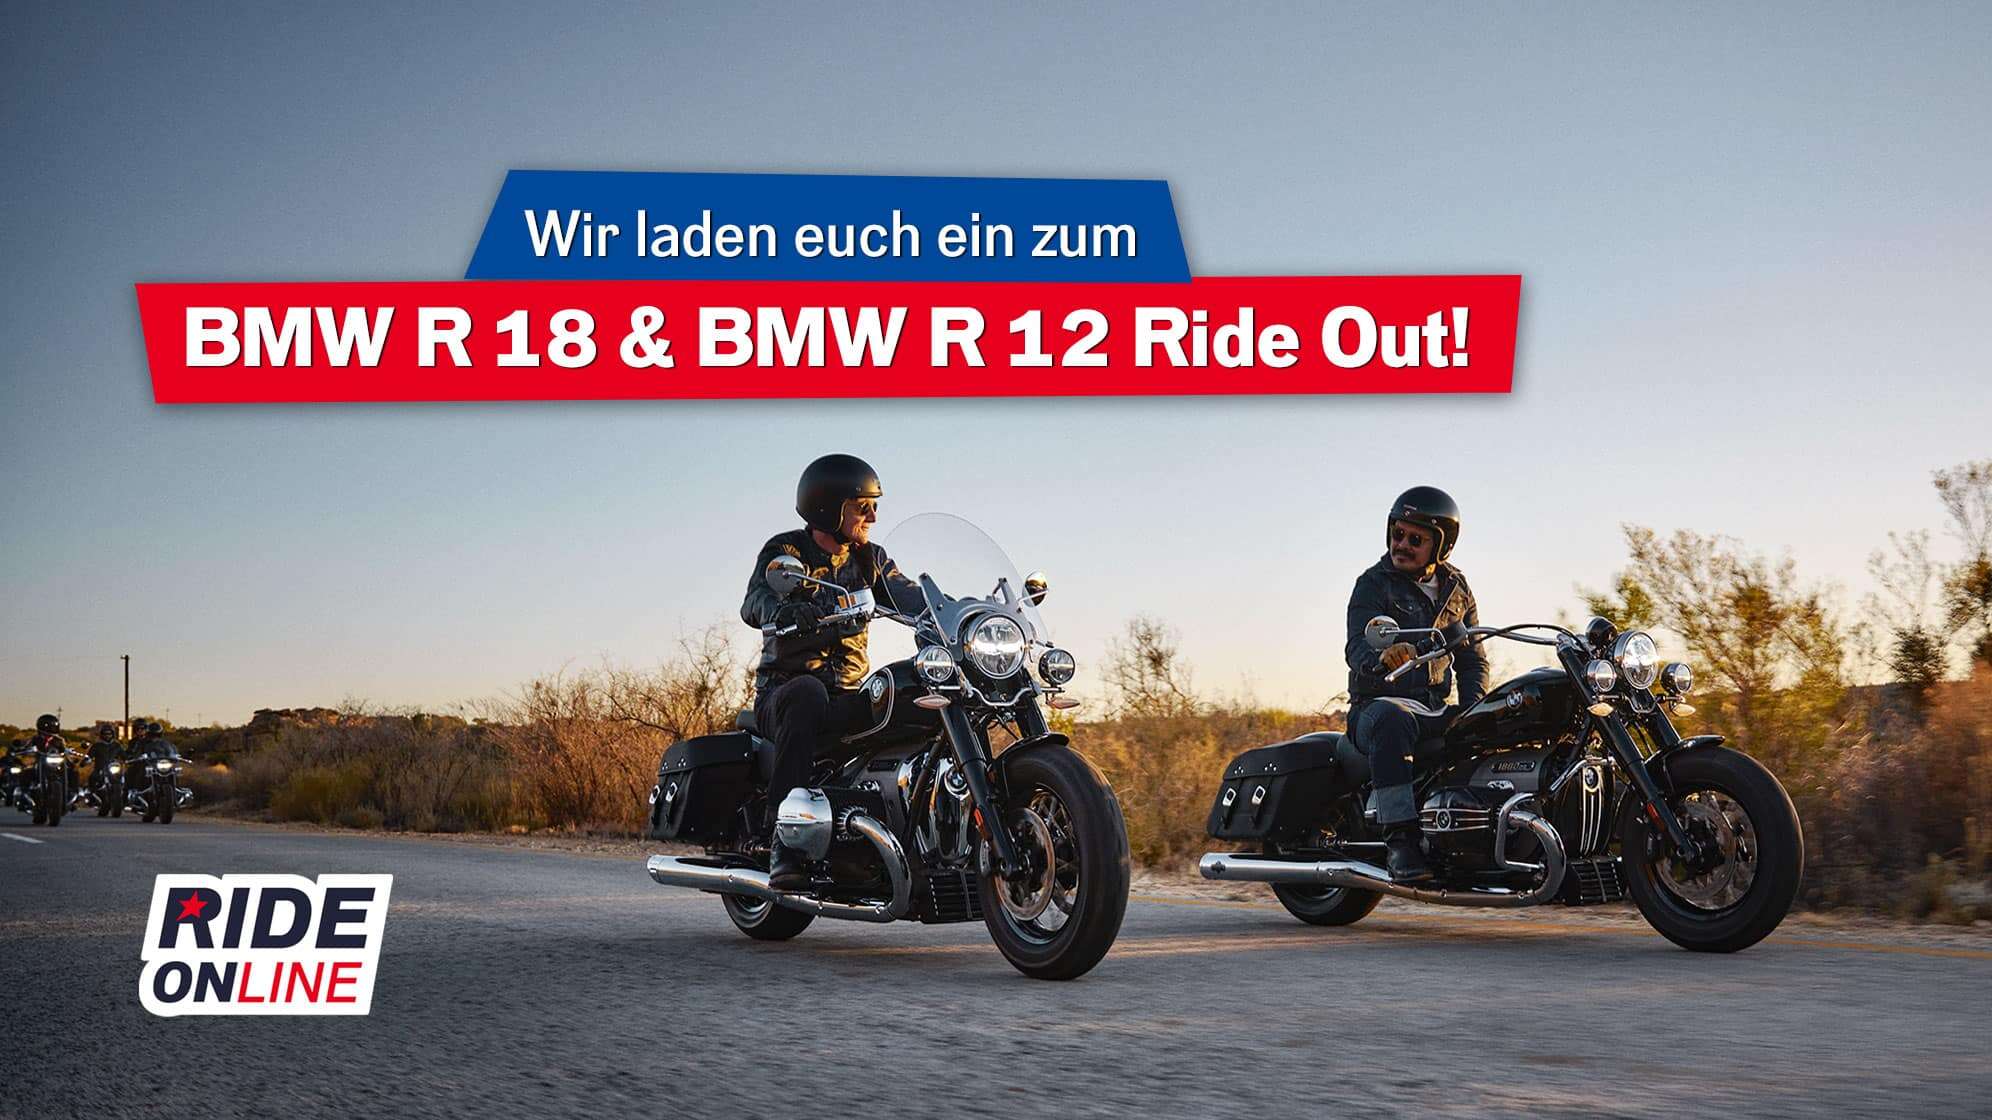 Foto von zwei BMW R 18 Motorrädern auf einer Landstraße im Sonnenuntergang, dazu der Text: Wir laden euch ein zum BMW R 18 & BMW R 12 Ride out!